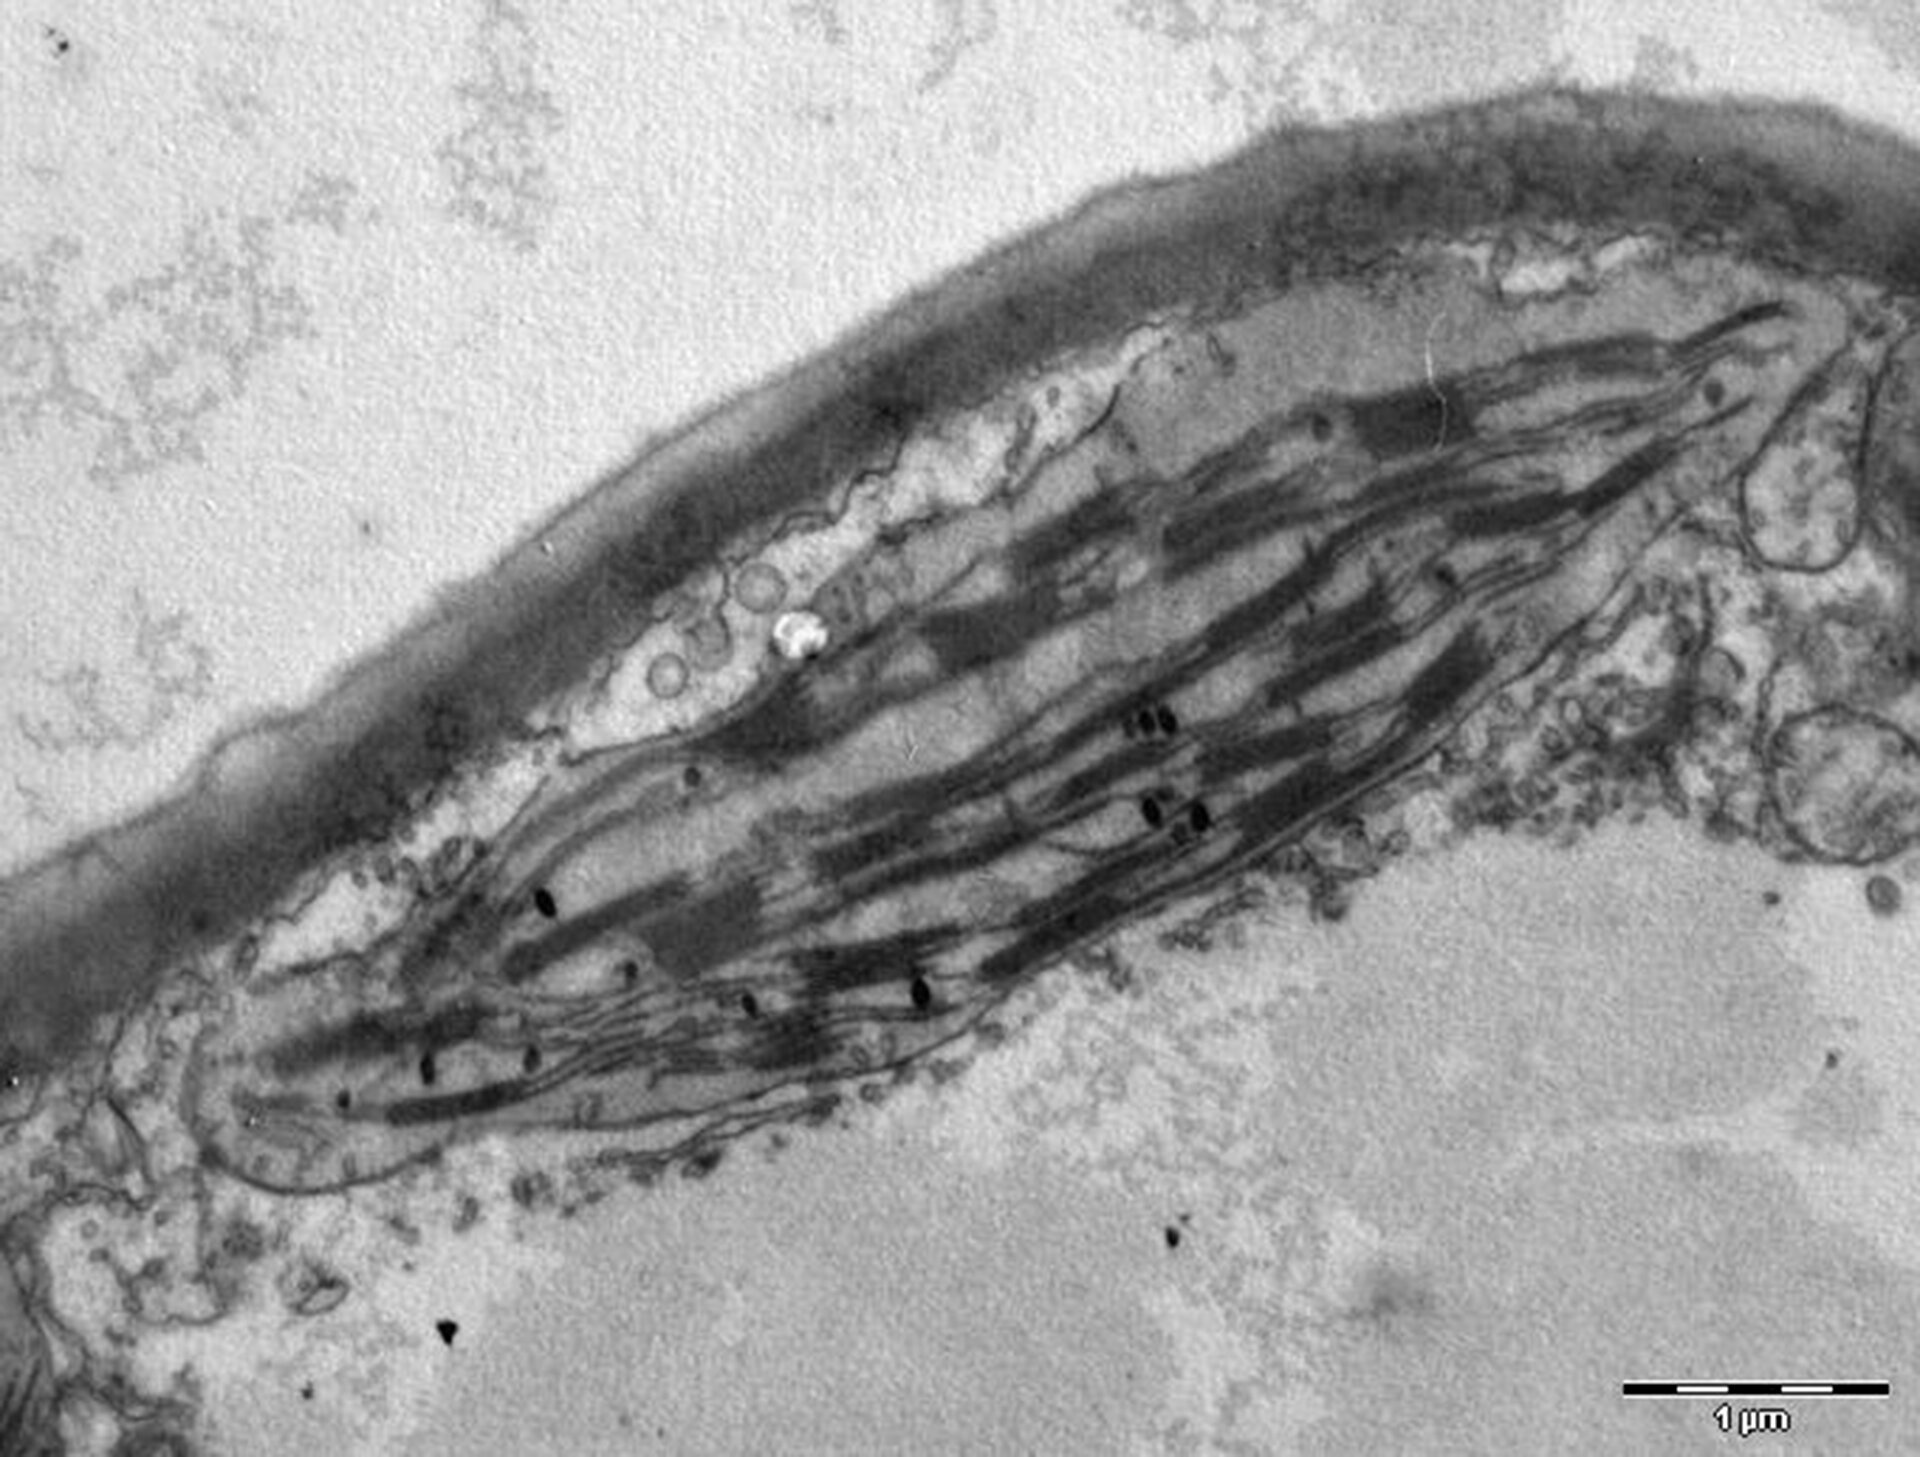 Czarno‑biała mikrofotografia przedstawia chloroplast. Znajduje się on we wnętrzu cytoplazmy, obok ściany komórkowej widocznej jako ciemna granica. Chloroplast ma kształt dwuwypukłej soczewki. Wewnątrz znajdują się ciemniejsze poziome paski oznaczające tylakoidy oraz czarne kropki - rybosomy. 